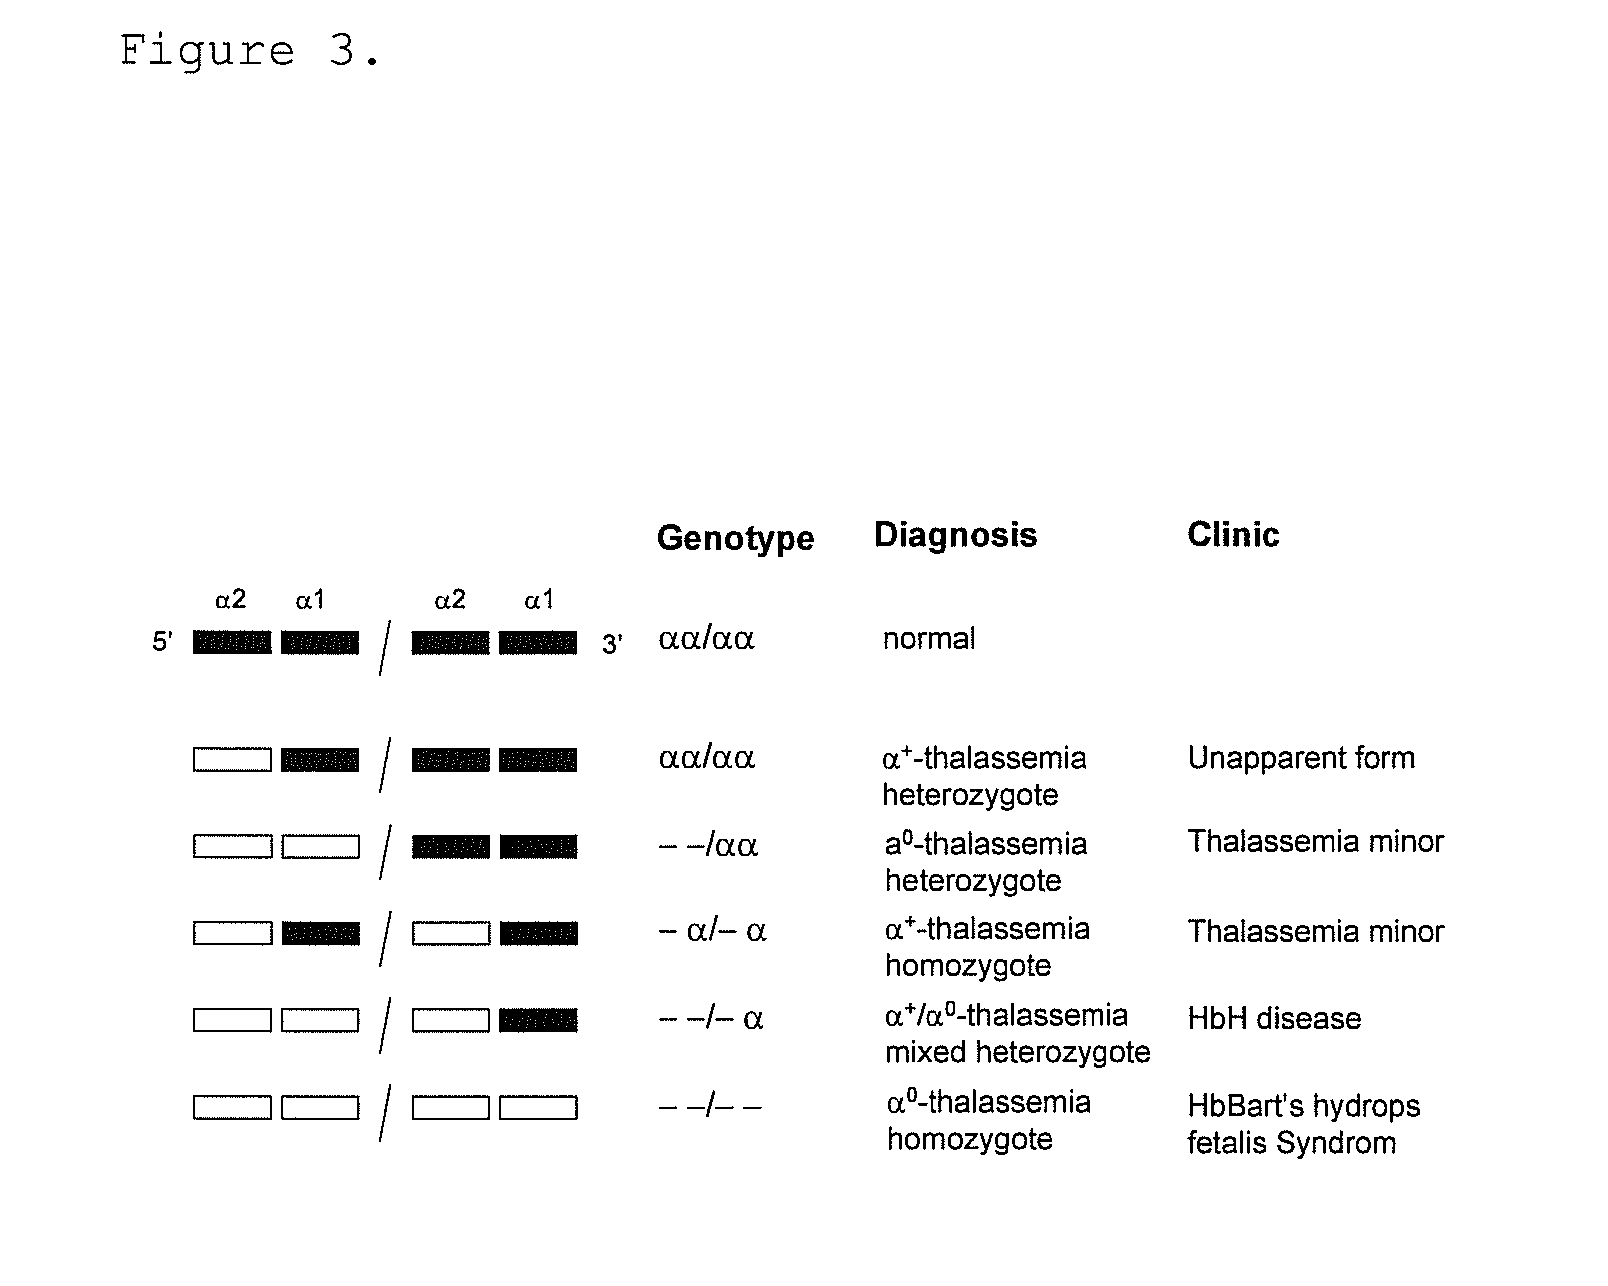 Gene dosage analysis